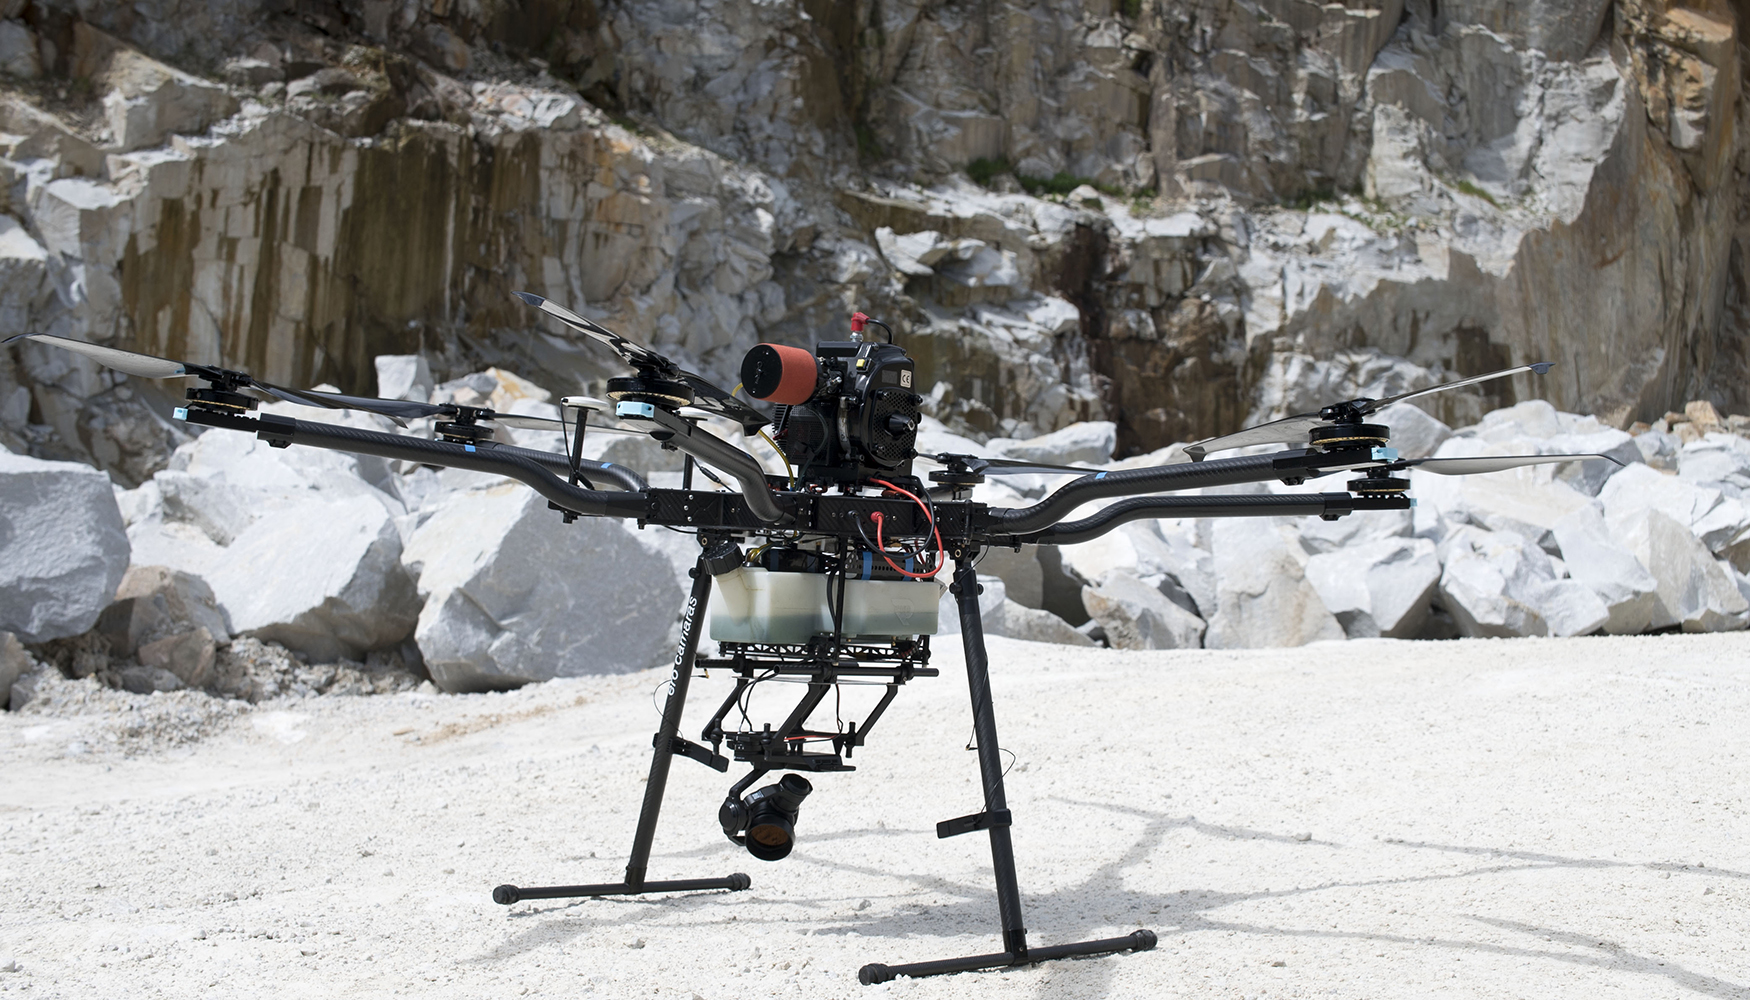 Drone hbrido AeroHyb desenvolvido pela Aerocamaras, um dos usados ​​para servios de topografia